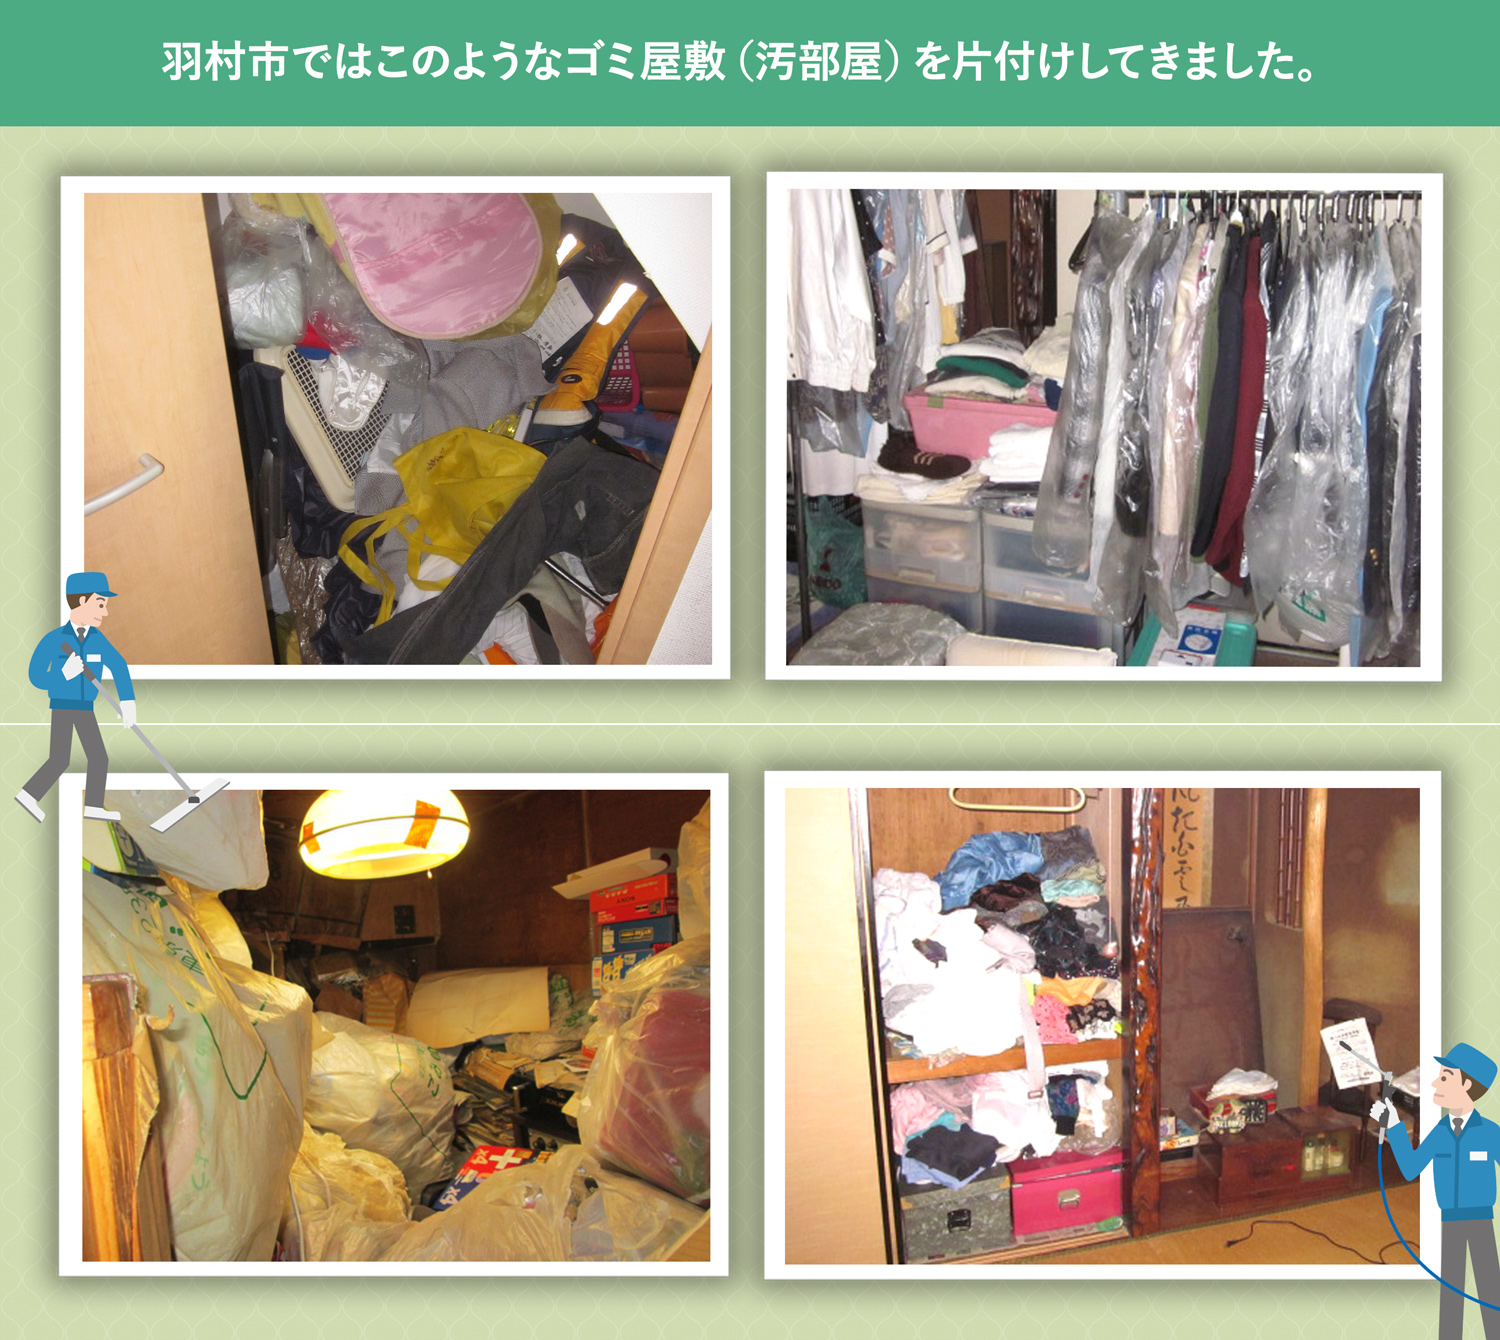 羽村市で行ったで行ったごみ屋敷・汚部屋の片付けの一例